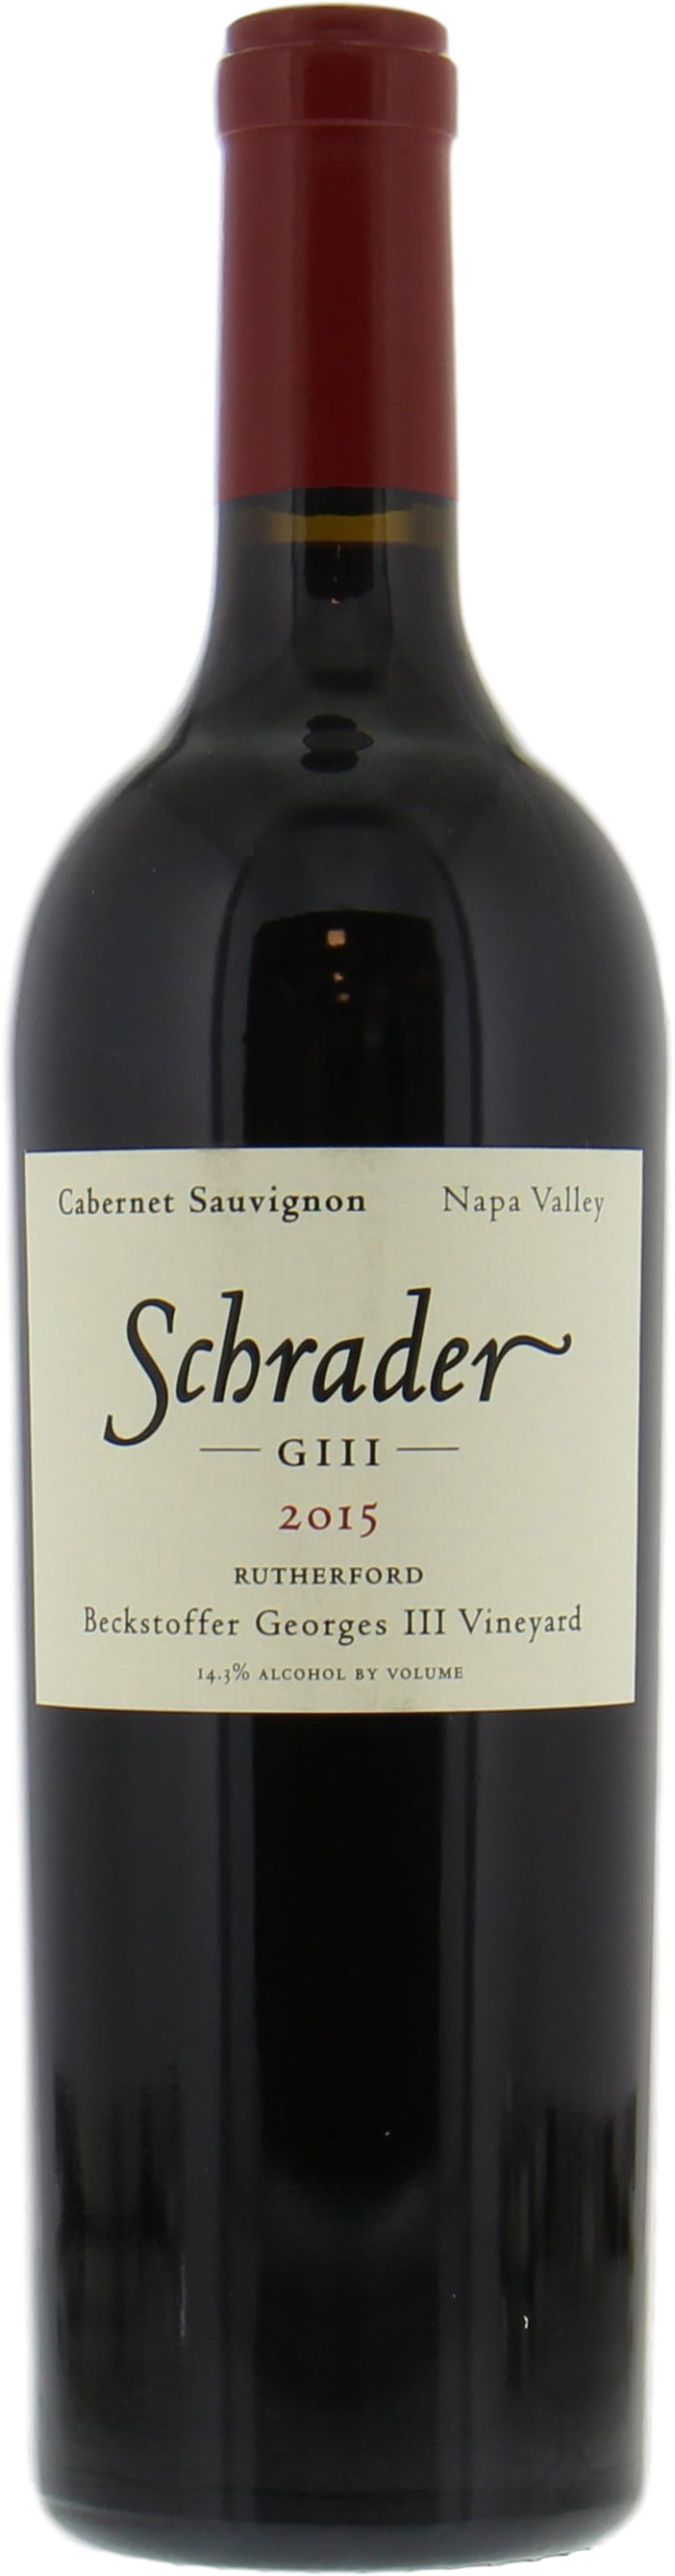 Schrader Cellars - Cabernet Sauvignon Beckstoffer George III Vineyard 2015 Perfect